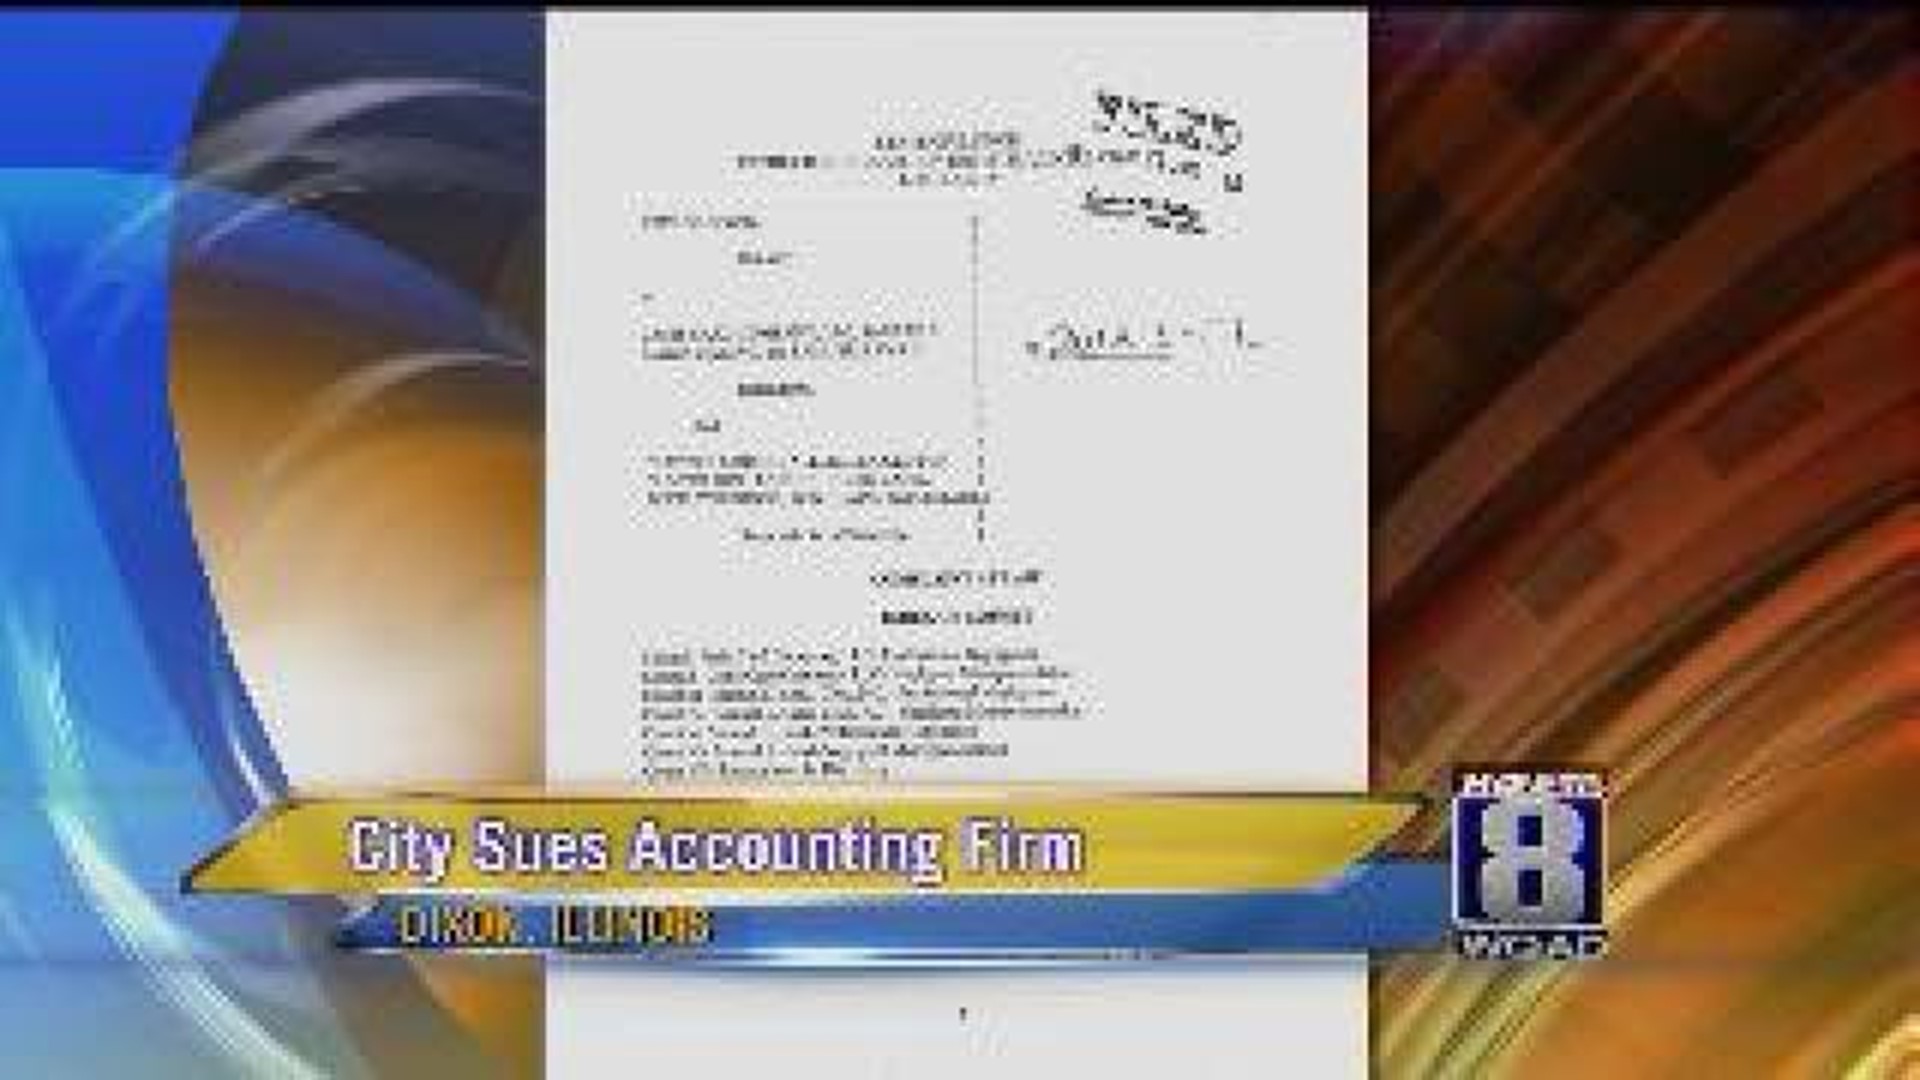 Dixon sues auditors